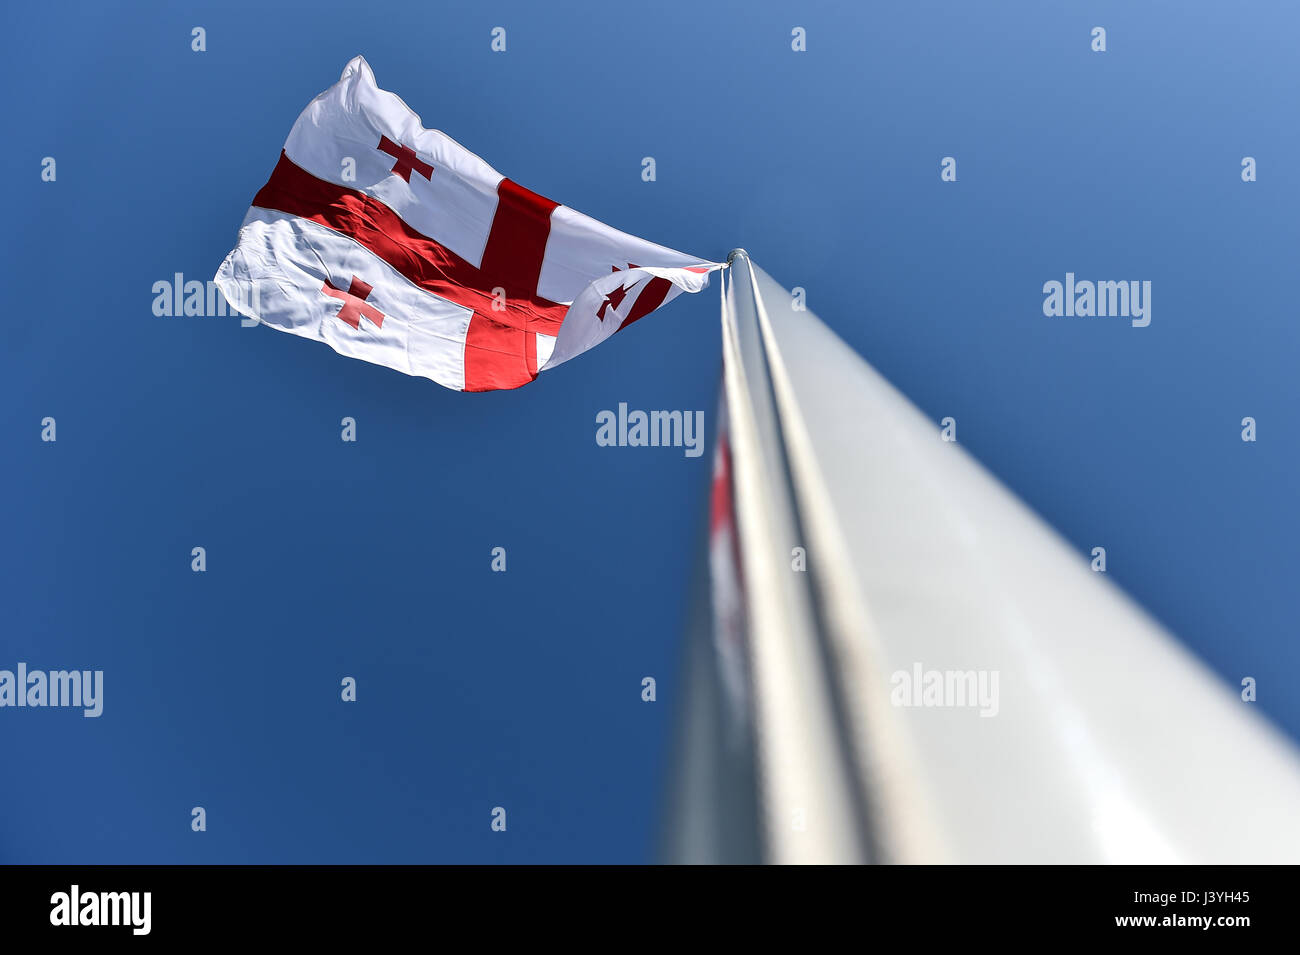 Drapeau national de Géorgie soufflé par le vent contre un ciel bleu Banque D'Images